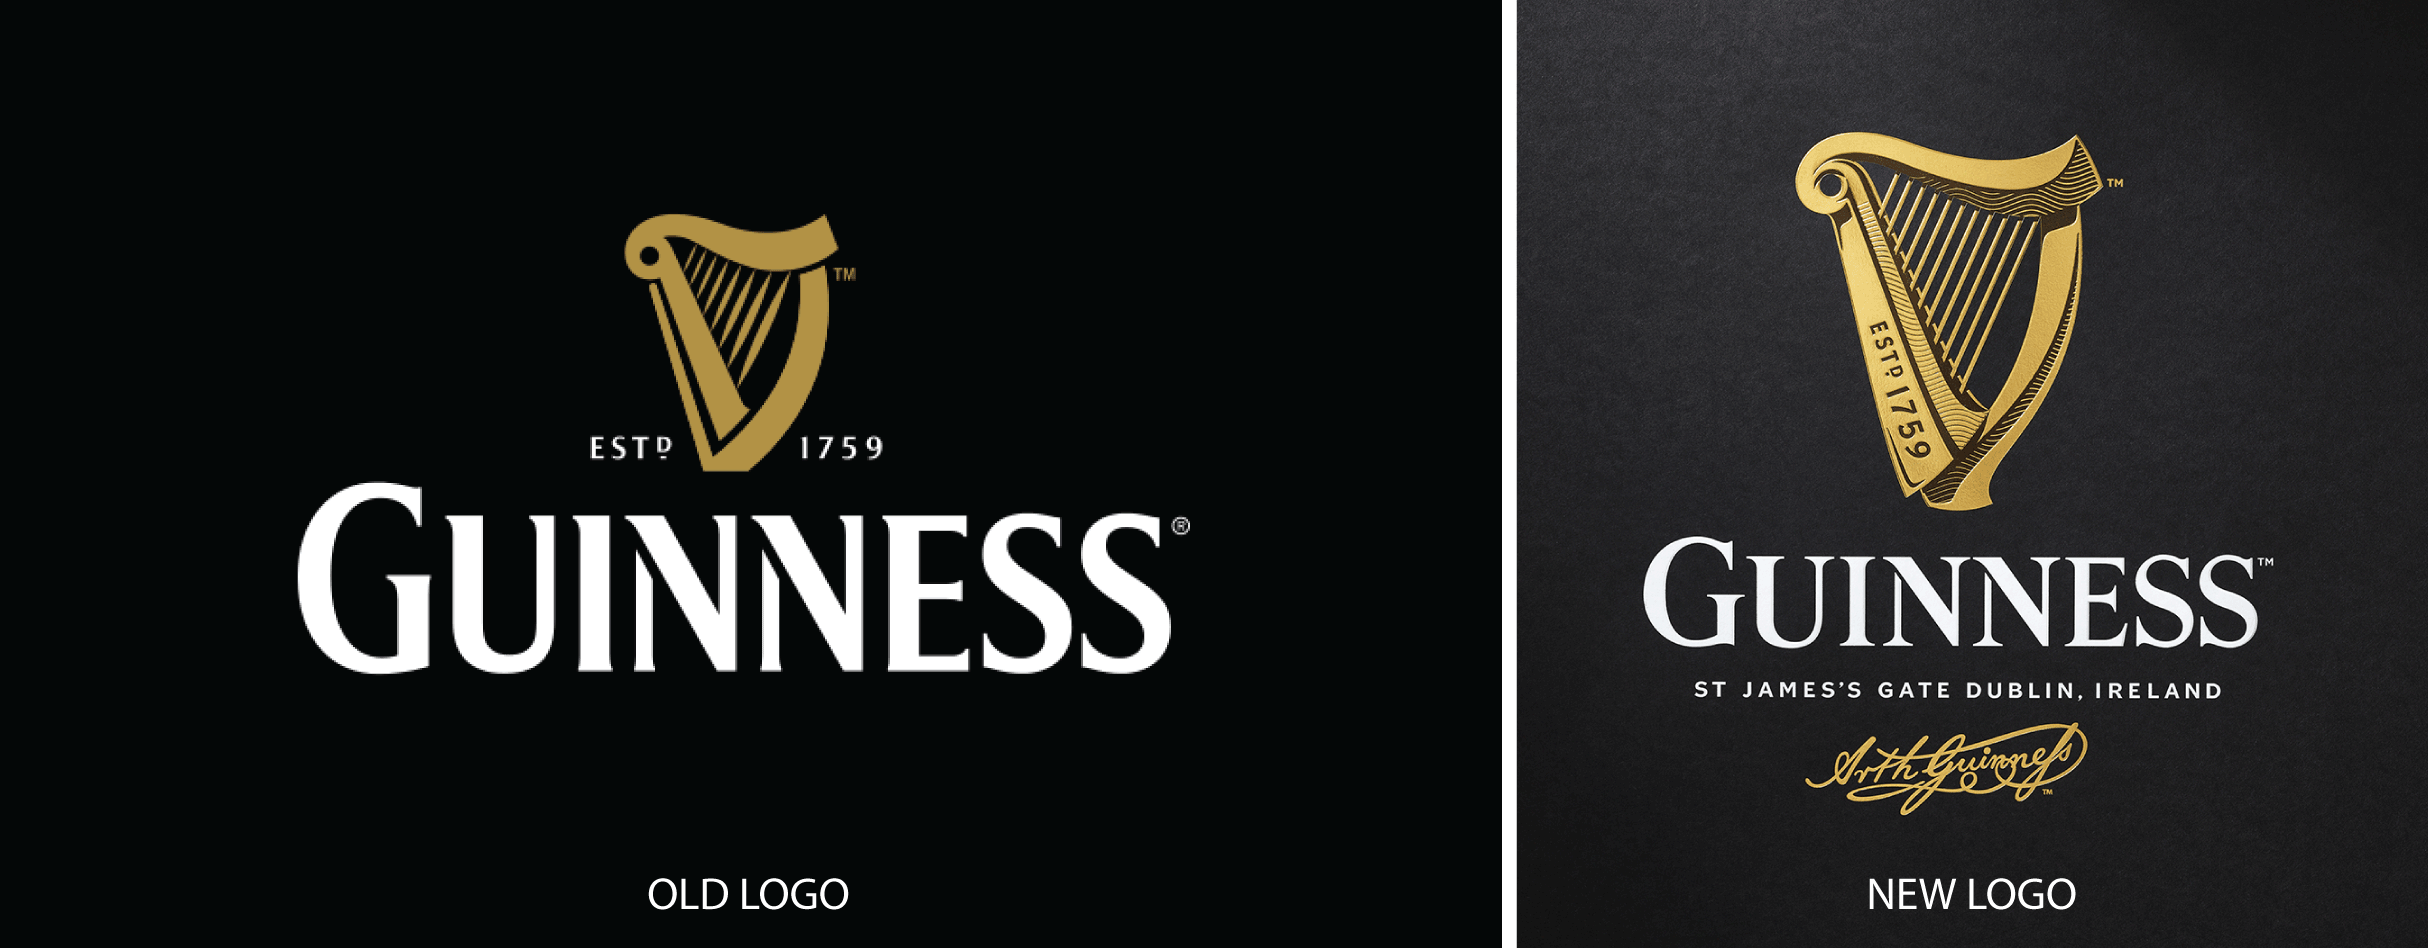 Guinness Bottle Logo - Guinness Brings History Back | Articles | LogoLounge